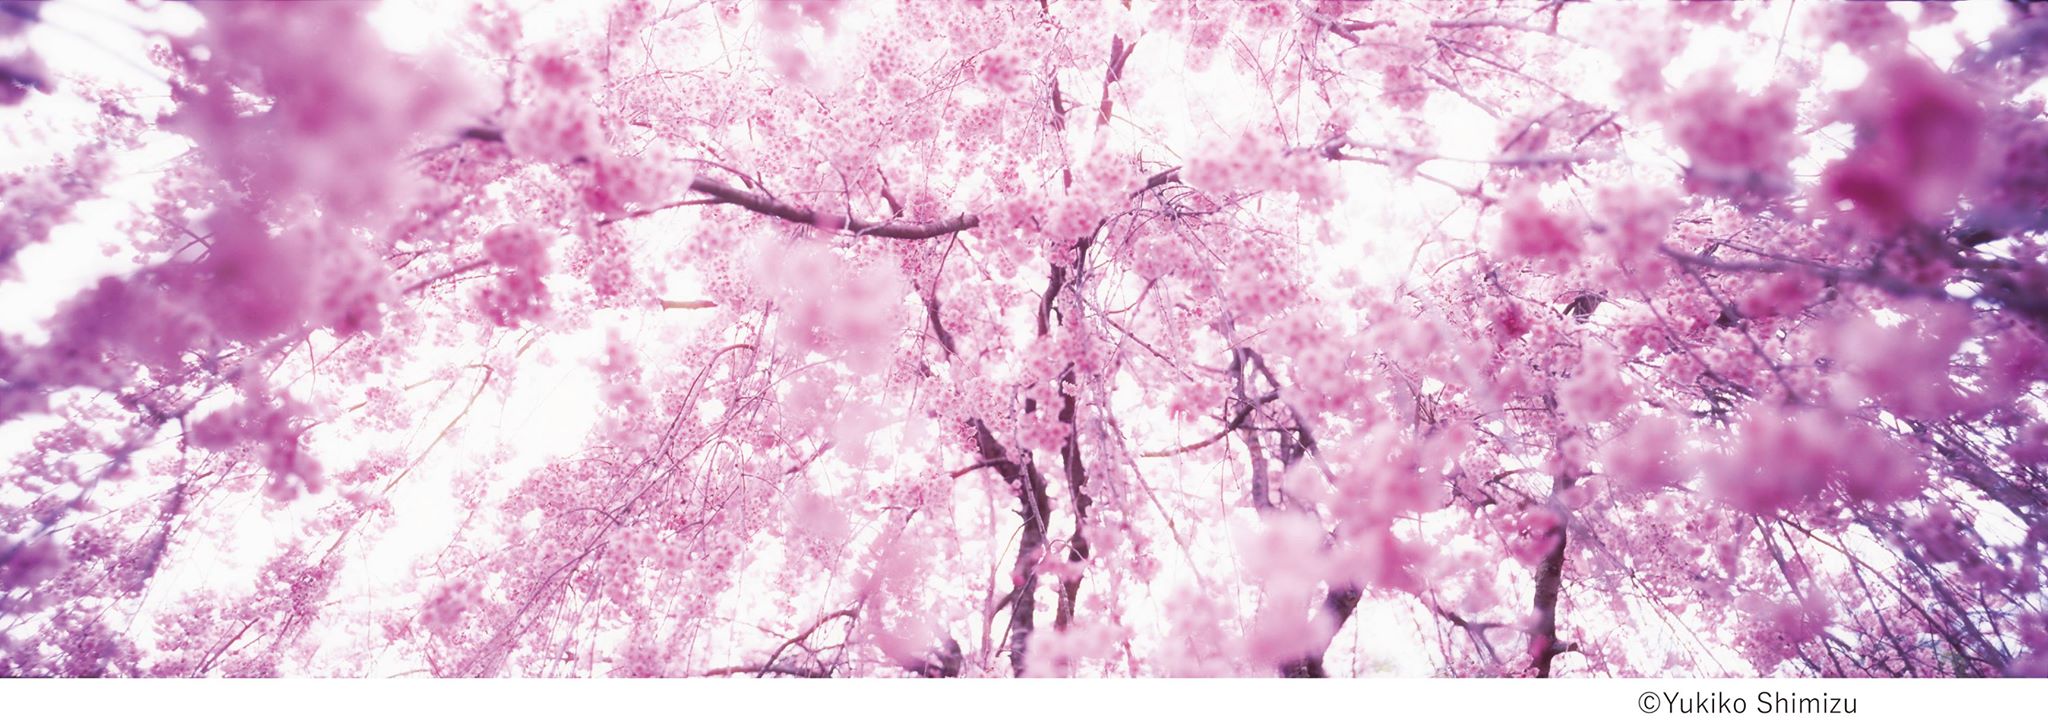 桜×中目黒×アート 中目黒アート花見会「SAKURA Group」展 【今週のおすすめアート】